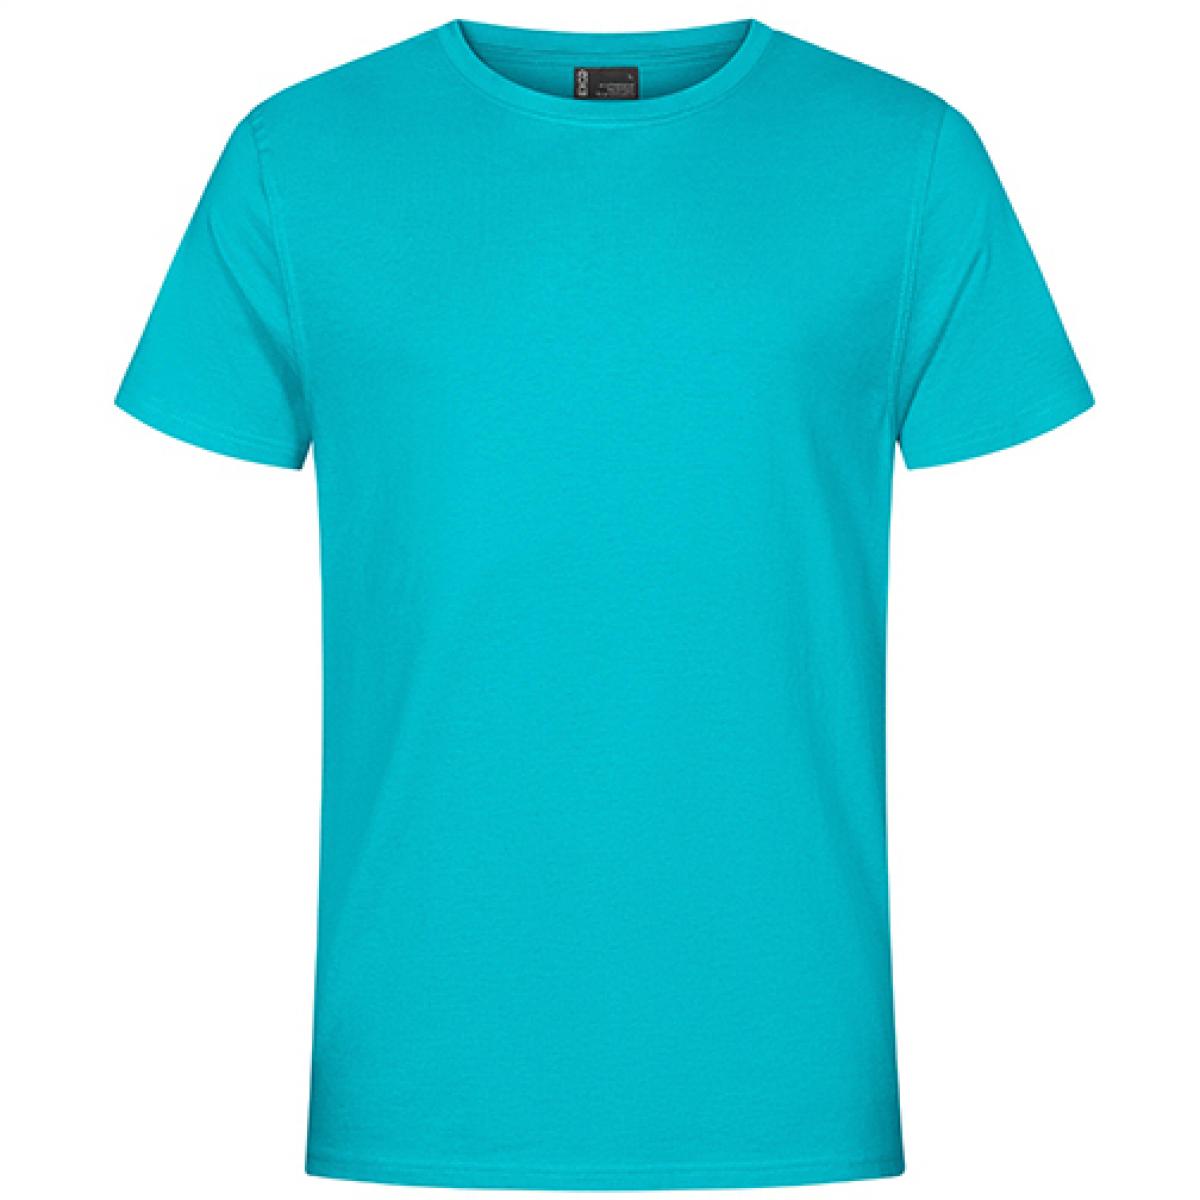 Hersteller: EXCD by Promodoro Herstellernummer: 3077 Artikelbezeichnung: Herren T-Shirt, Single-Jersey Farbe: Jade